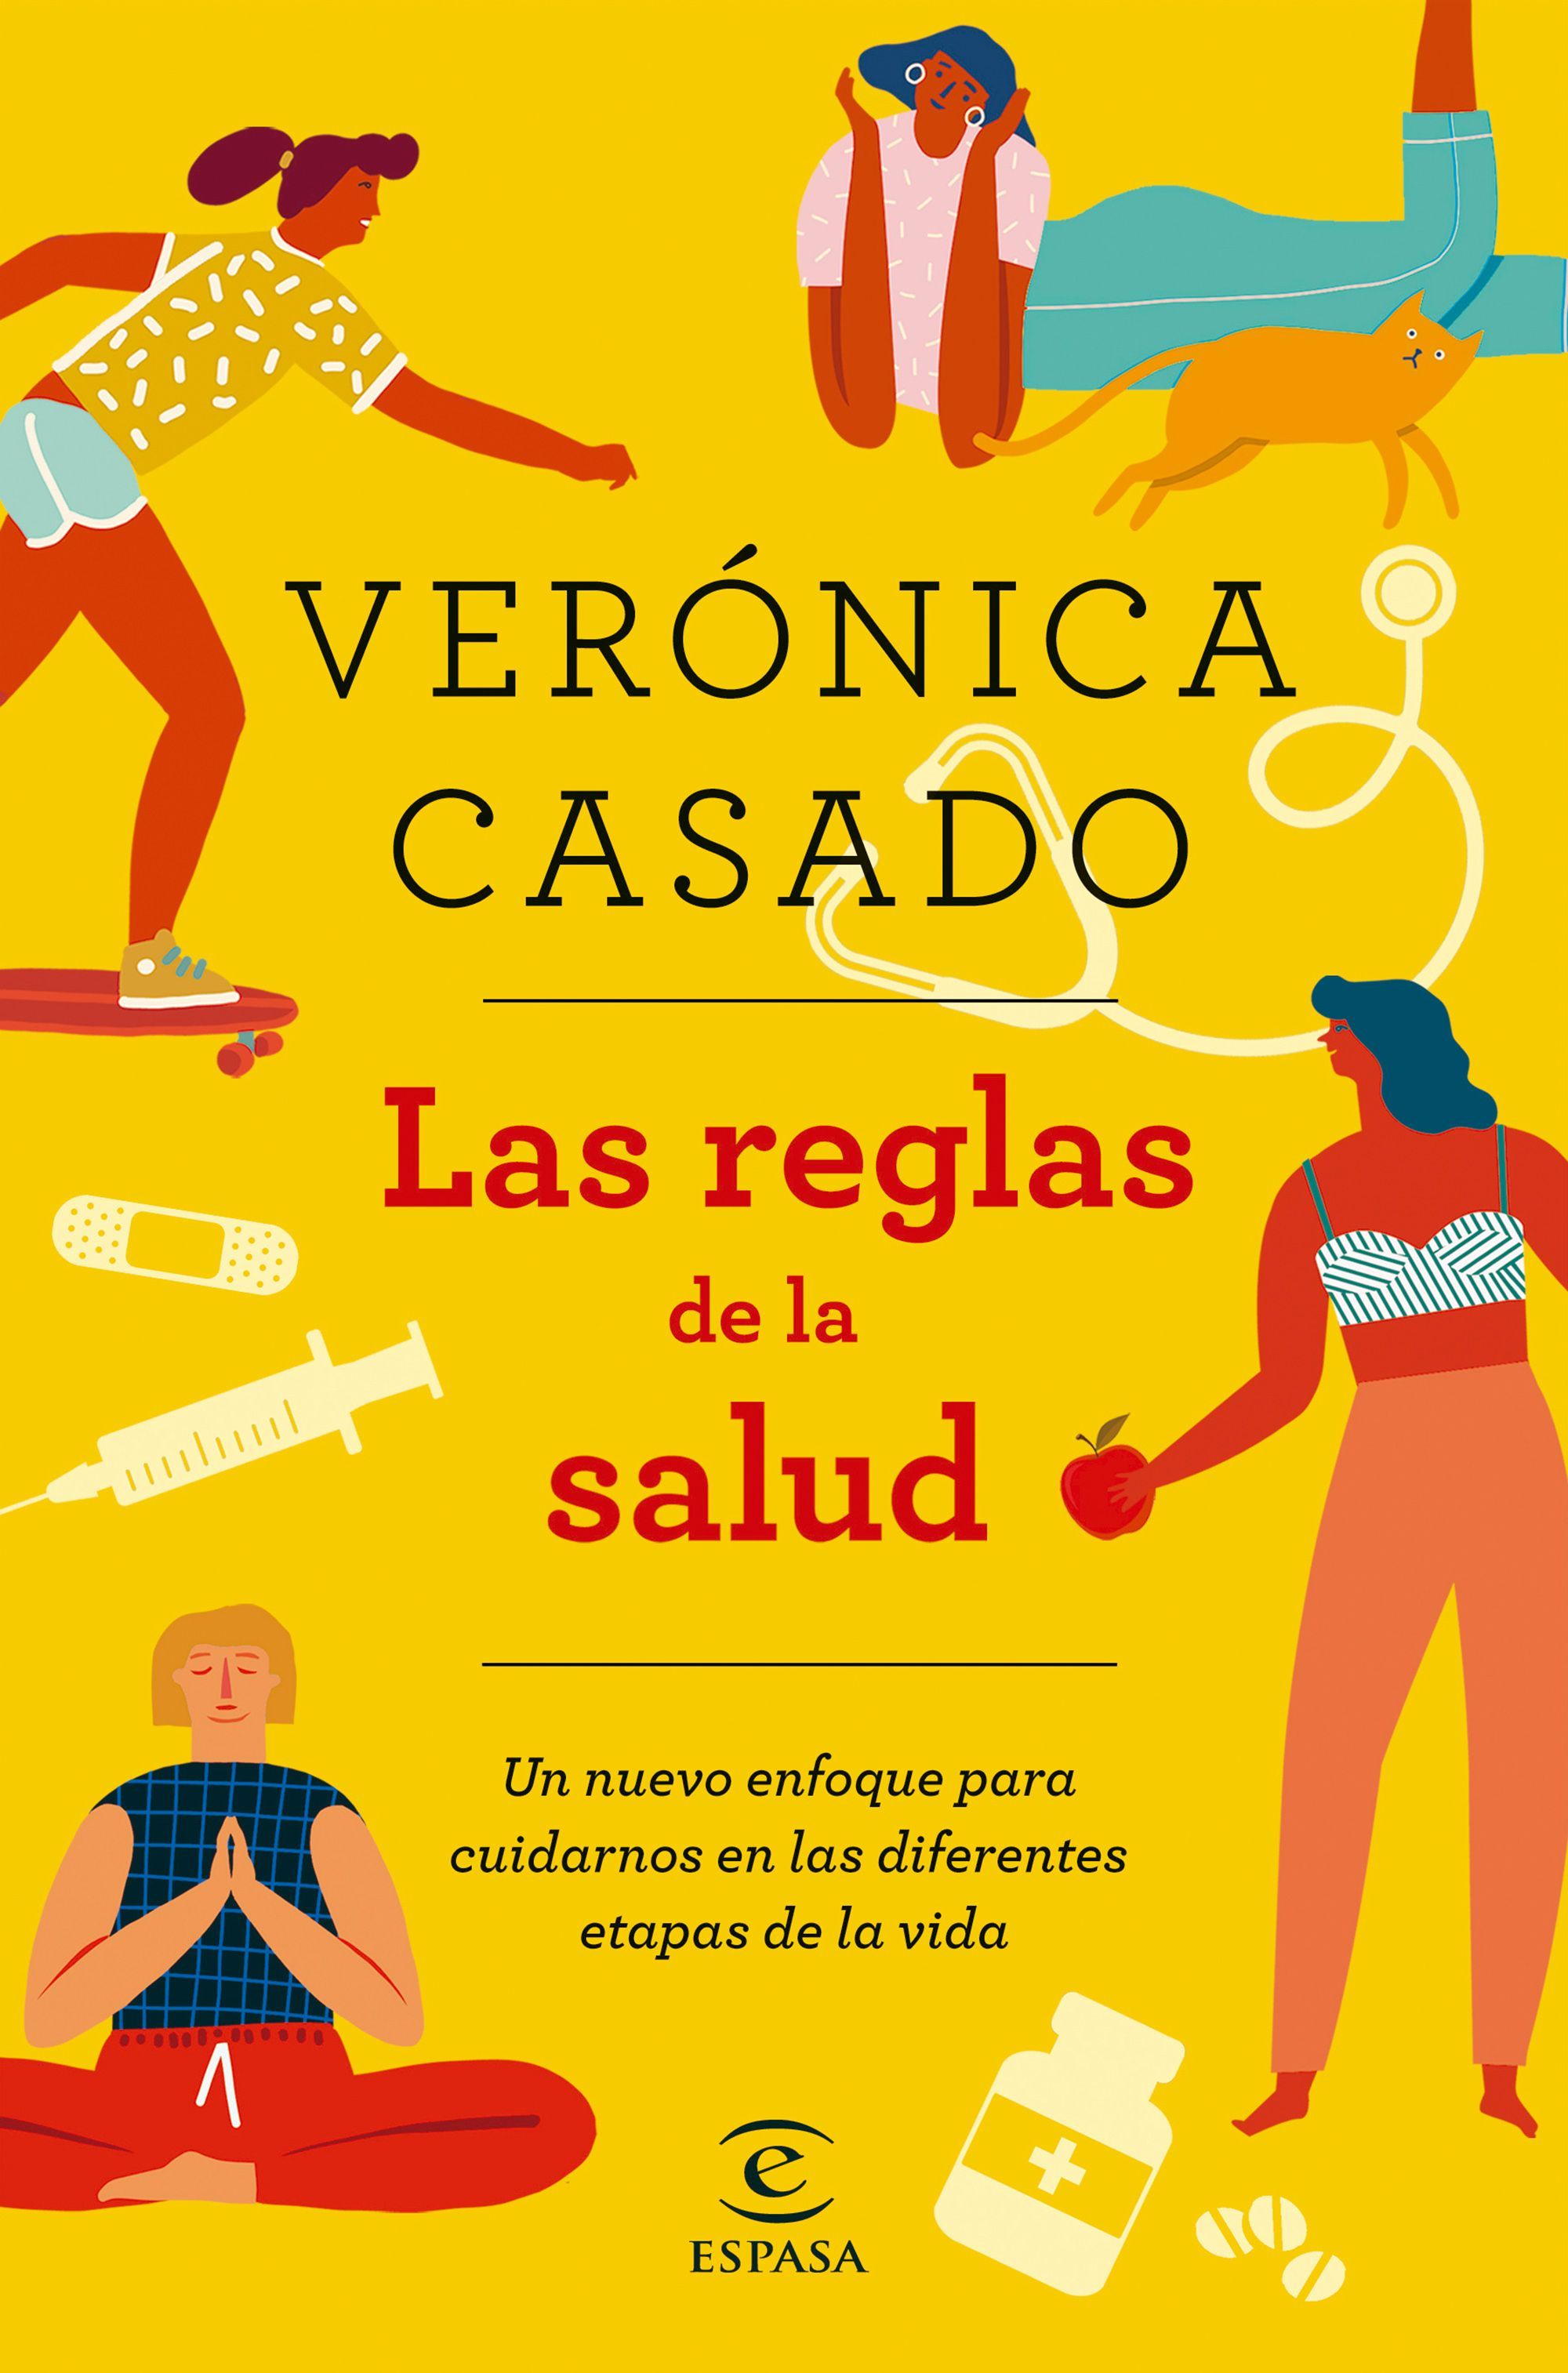 La doctora Verónica Casado explica cómo cuidarnos en cada etapa de la vida